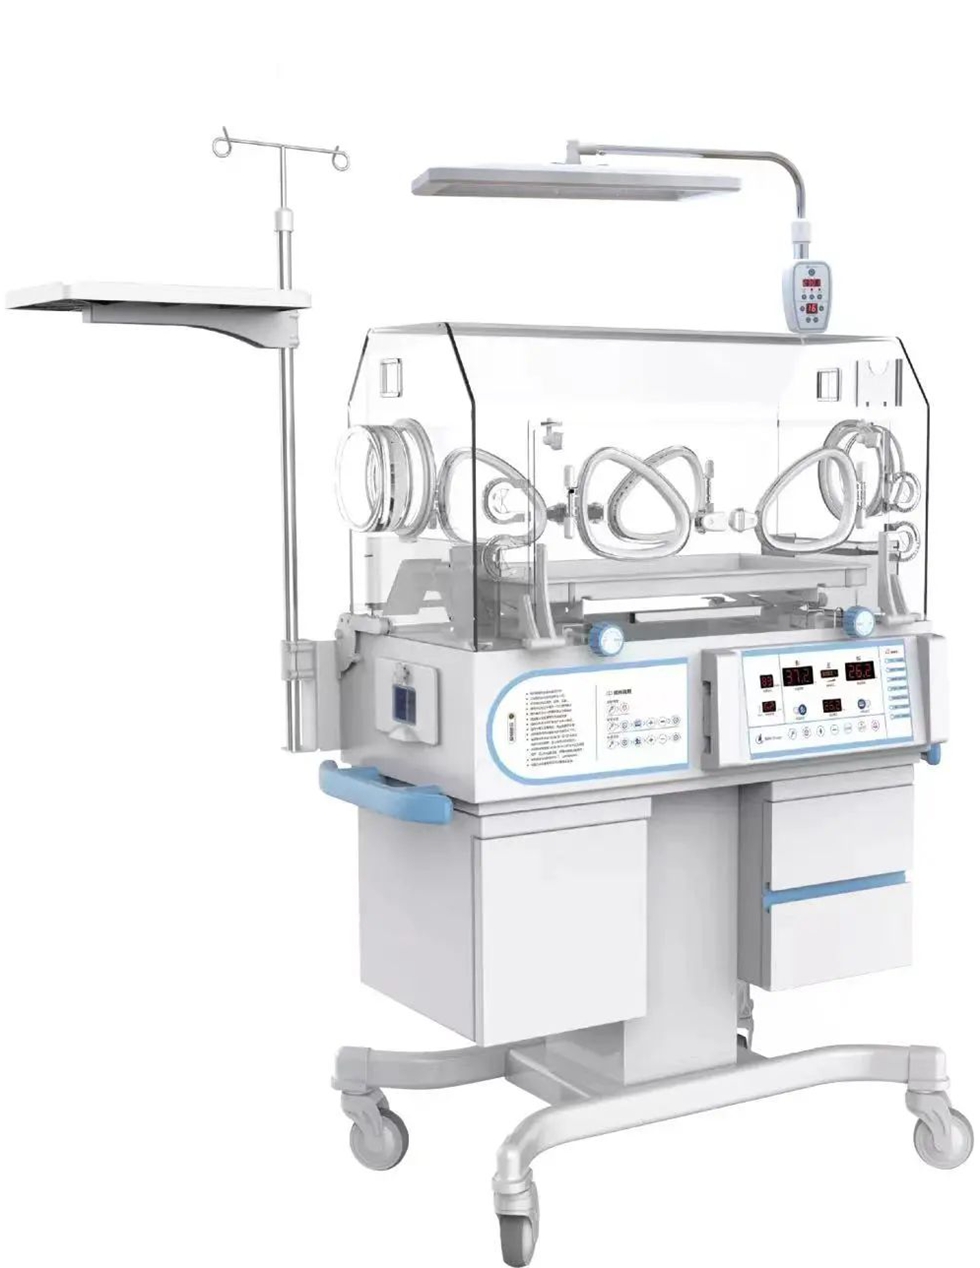 5. Heal Force YXK-8502D Infant Incubator